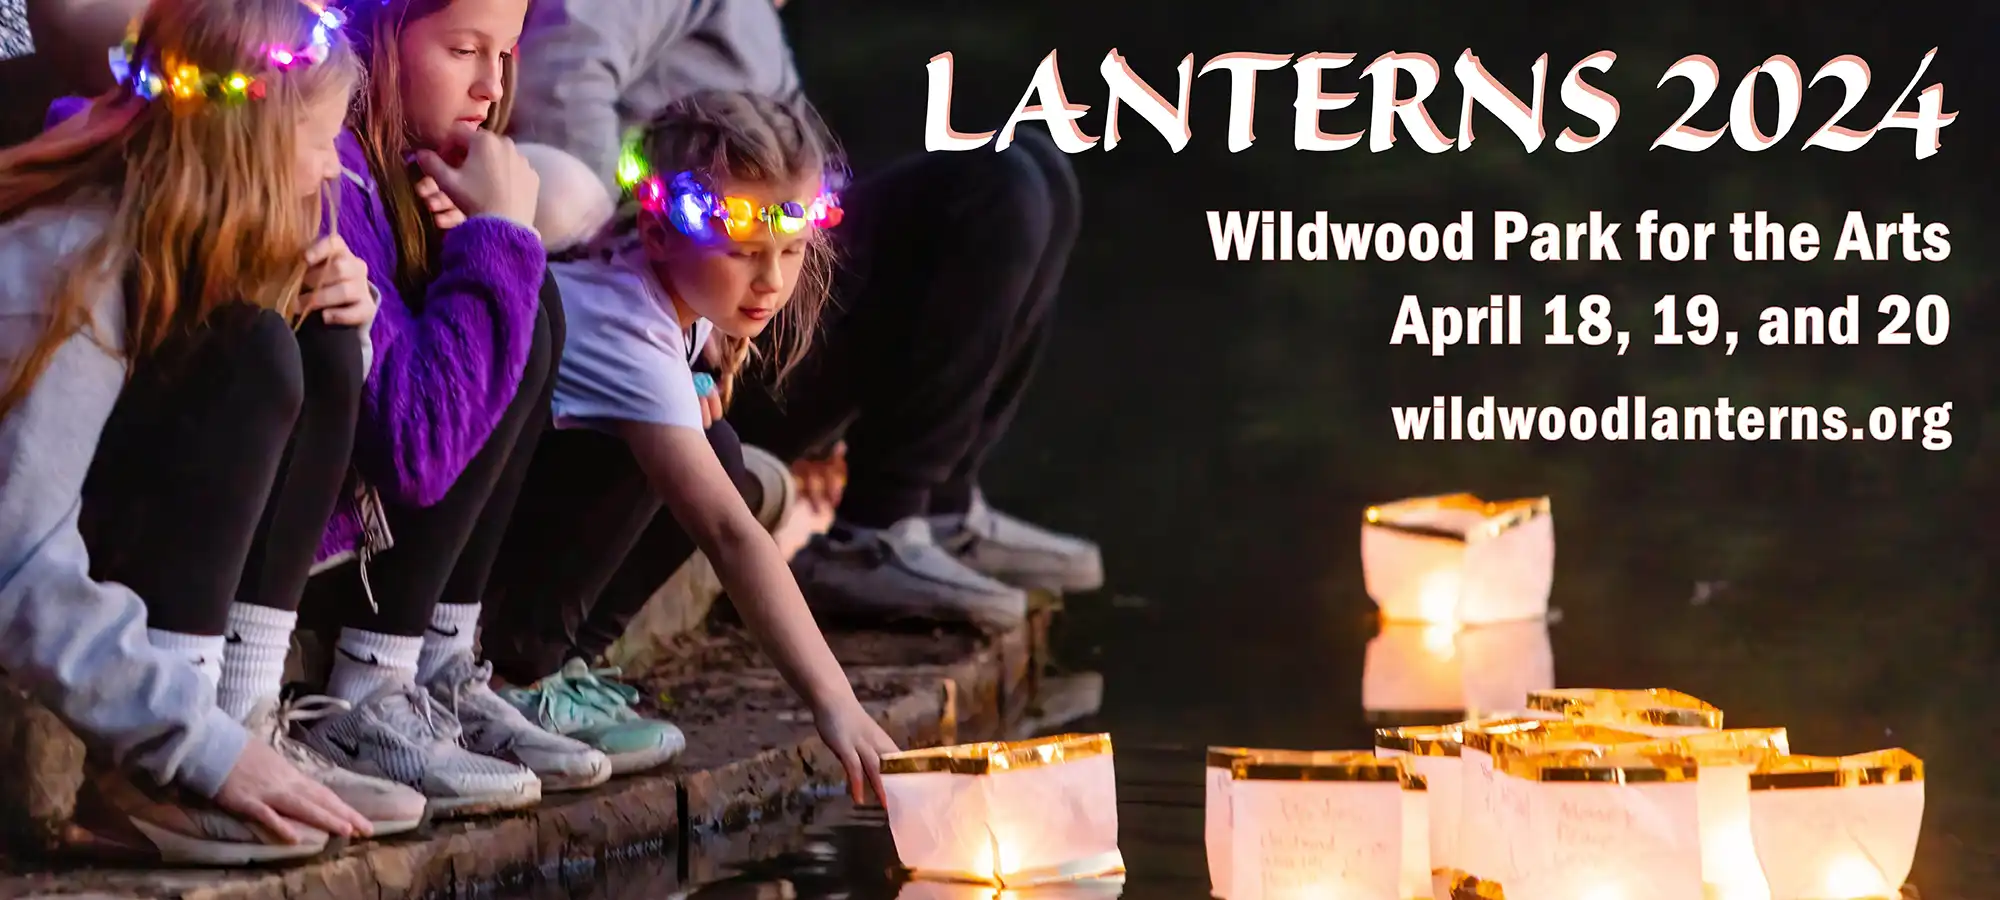 Lanterns 2024 at Wildwood Park - April 18-20, 2024